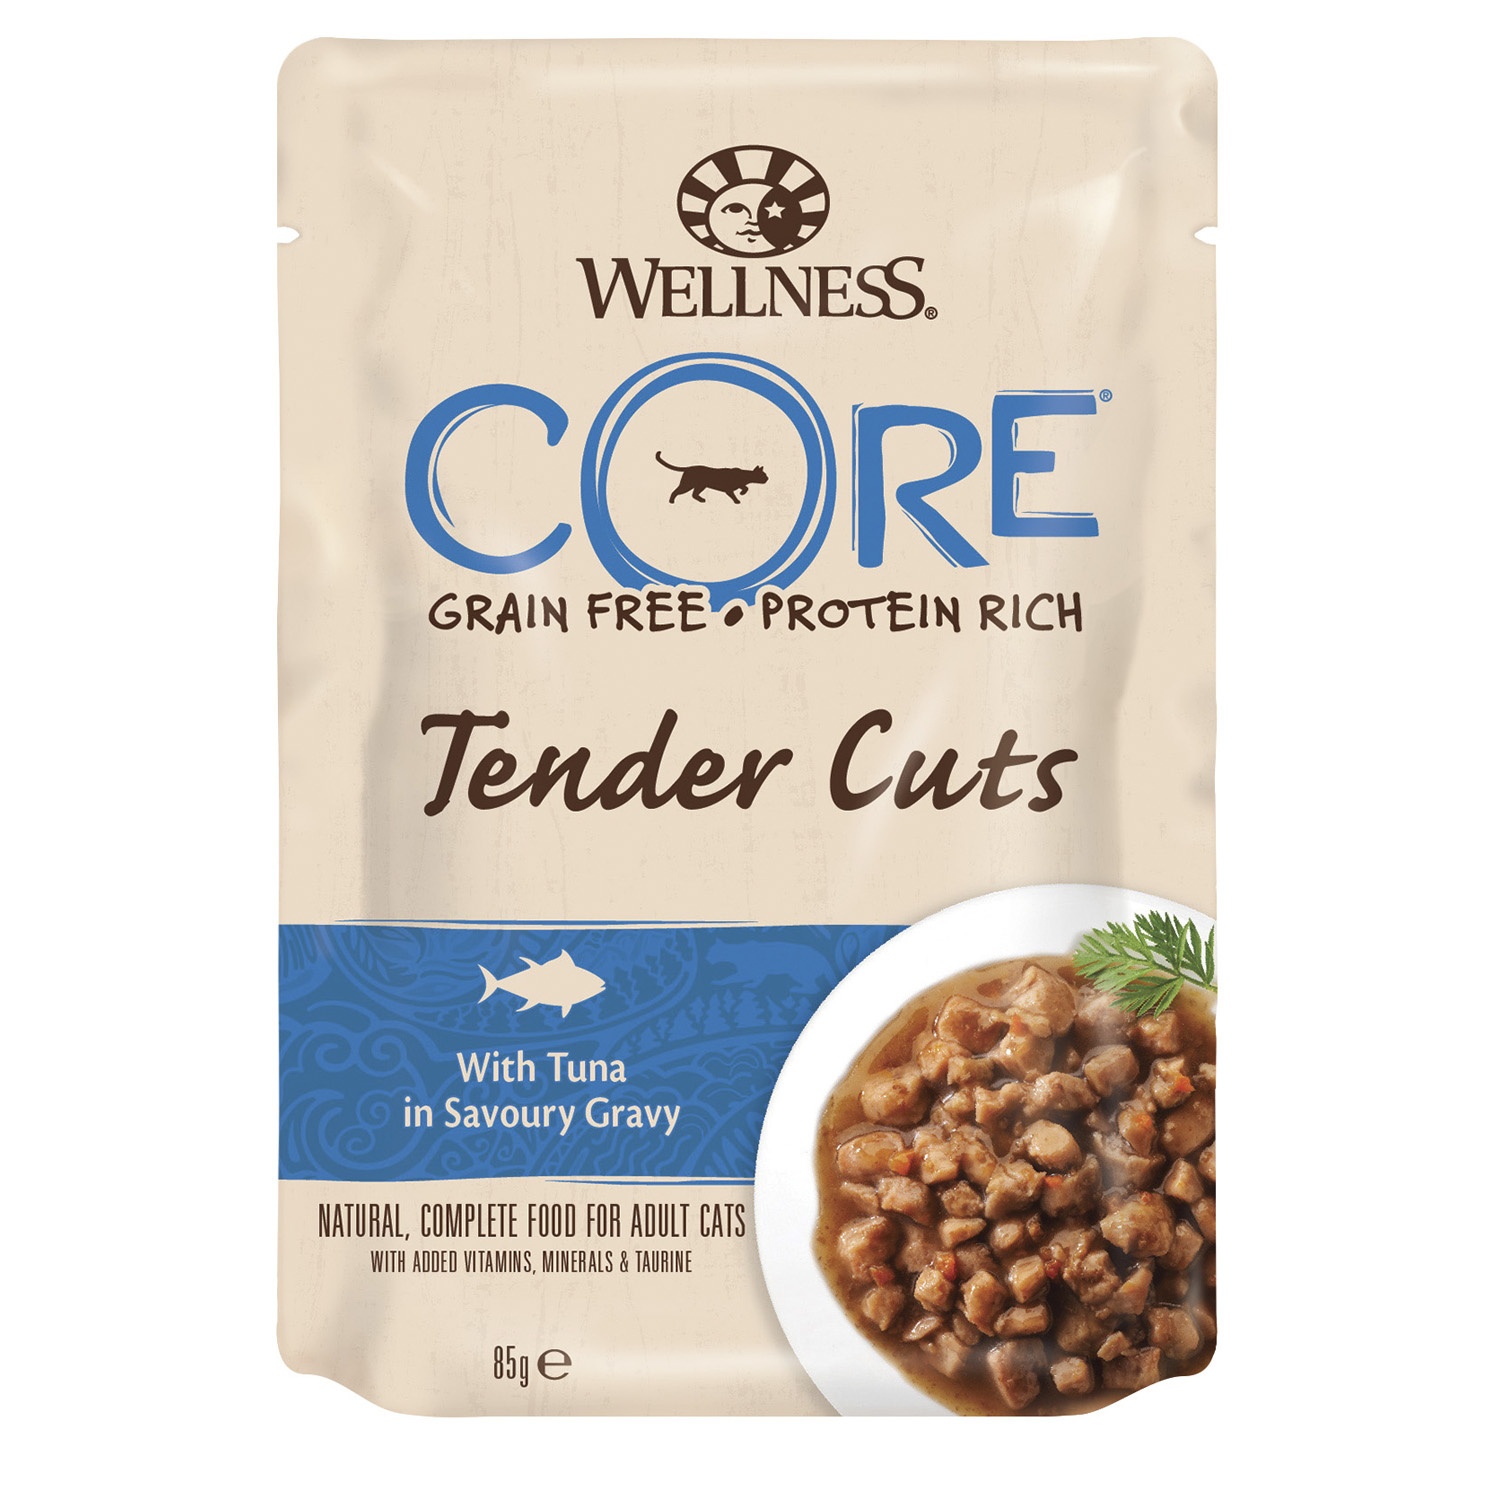 Wellness CORE tender Cuts паучи из тунца в виде нарезки в соусе для кошек (85 г) Wellness CORE tender Cuts паучи из тунца в виде нарезки в соусе для кошек (85 г) - фото 1